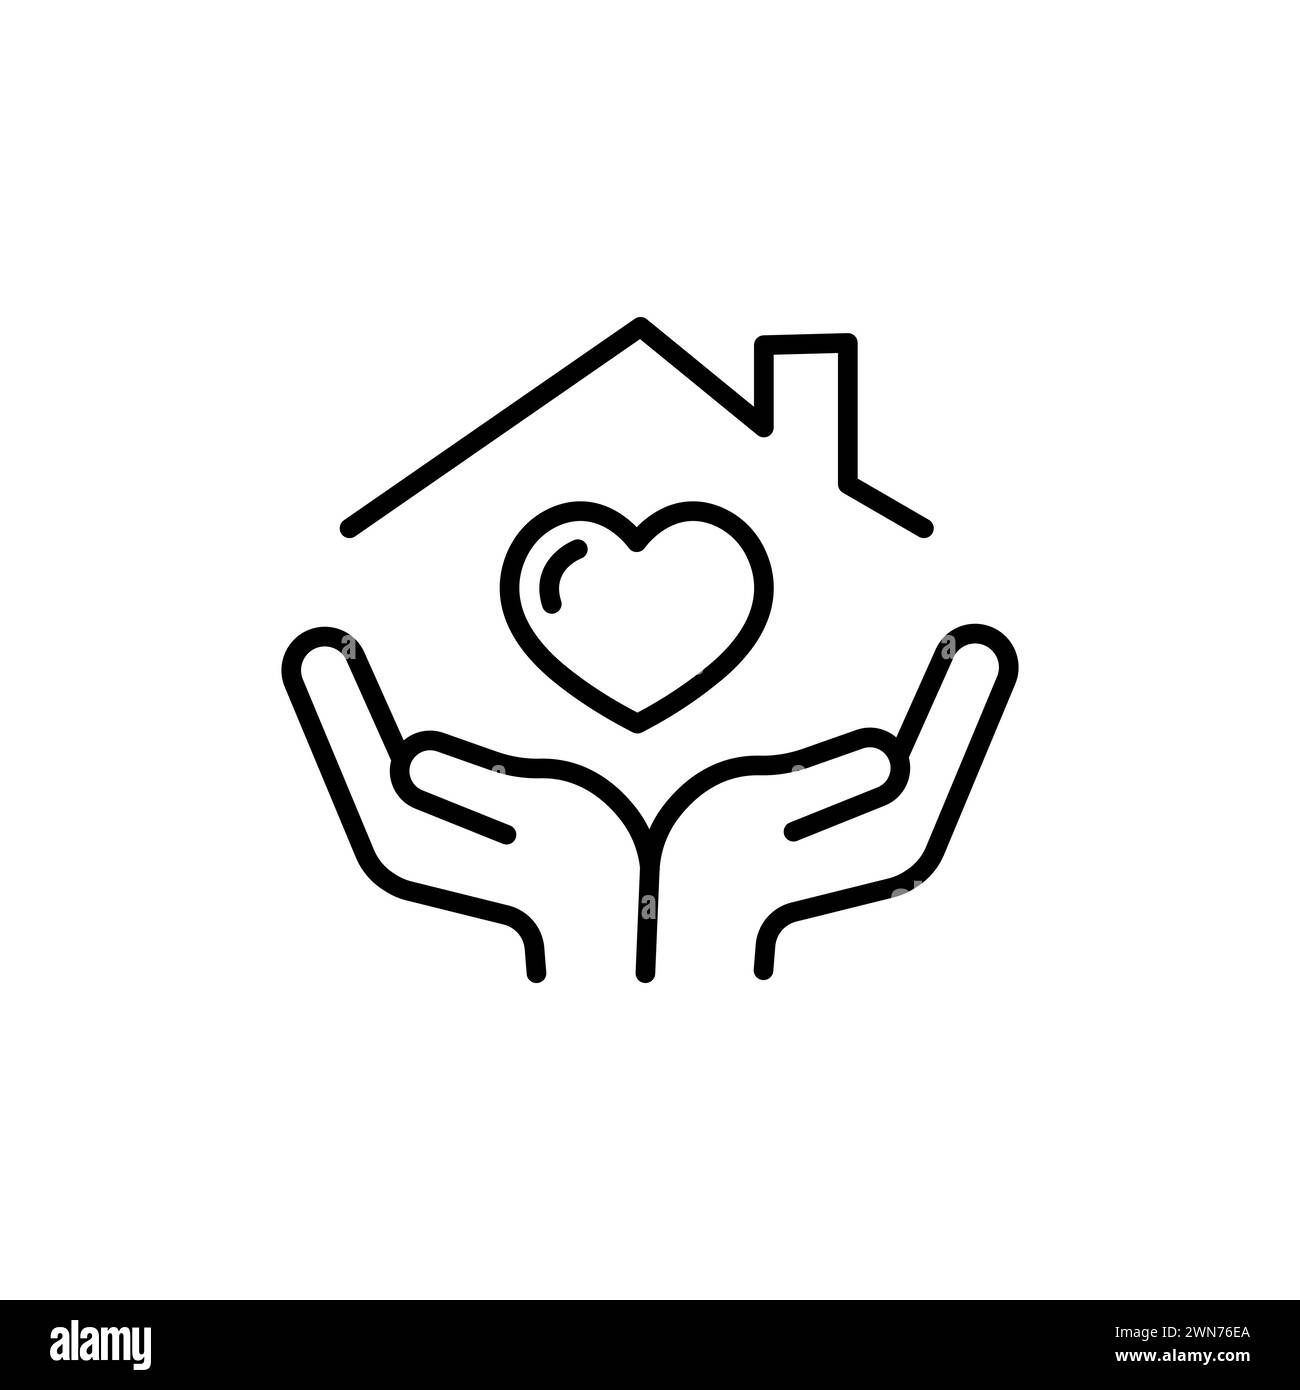 Die besten Hände halten das Haussymbol mit dem herzförmigen Liniensymbol für Web-, Mobile- und Infografiken Stock Vektor